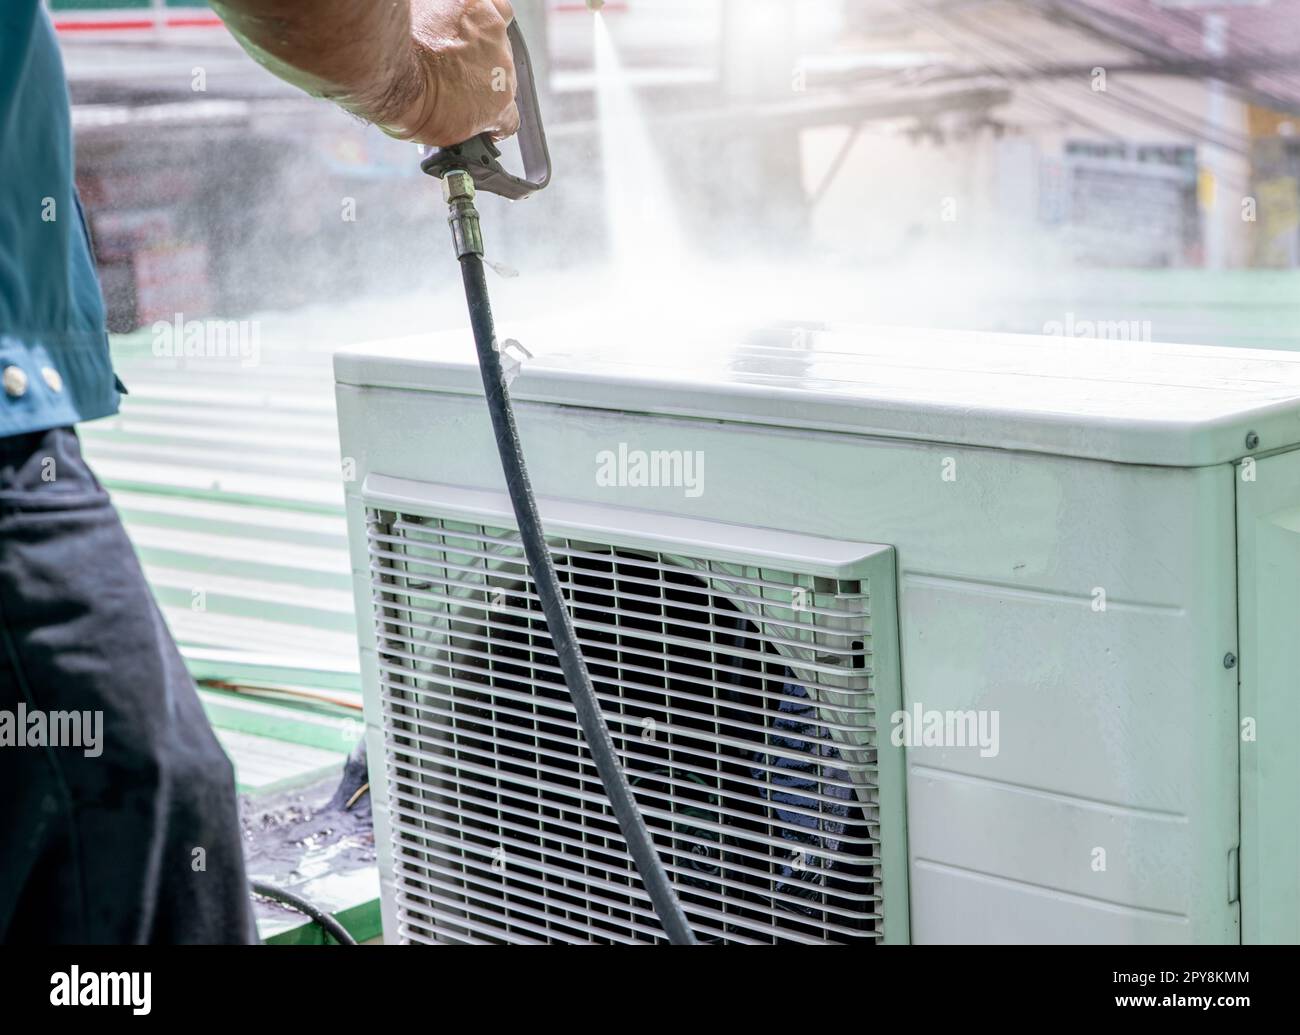 Pulizia dell'aria condizionata da parte di un uomo. Il tecnico pulisce l'unità di condensazione del climatizzatore spruzzando acqua. Servizio di manutenzione dell'aria condizionata a casa o in ufficio. Lavoratore che lavora per la manutenzione dell'aria condizionata. Foto Stock